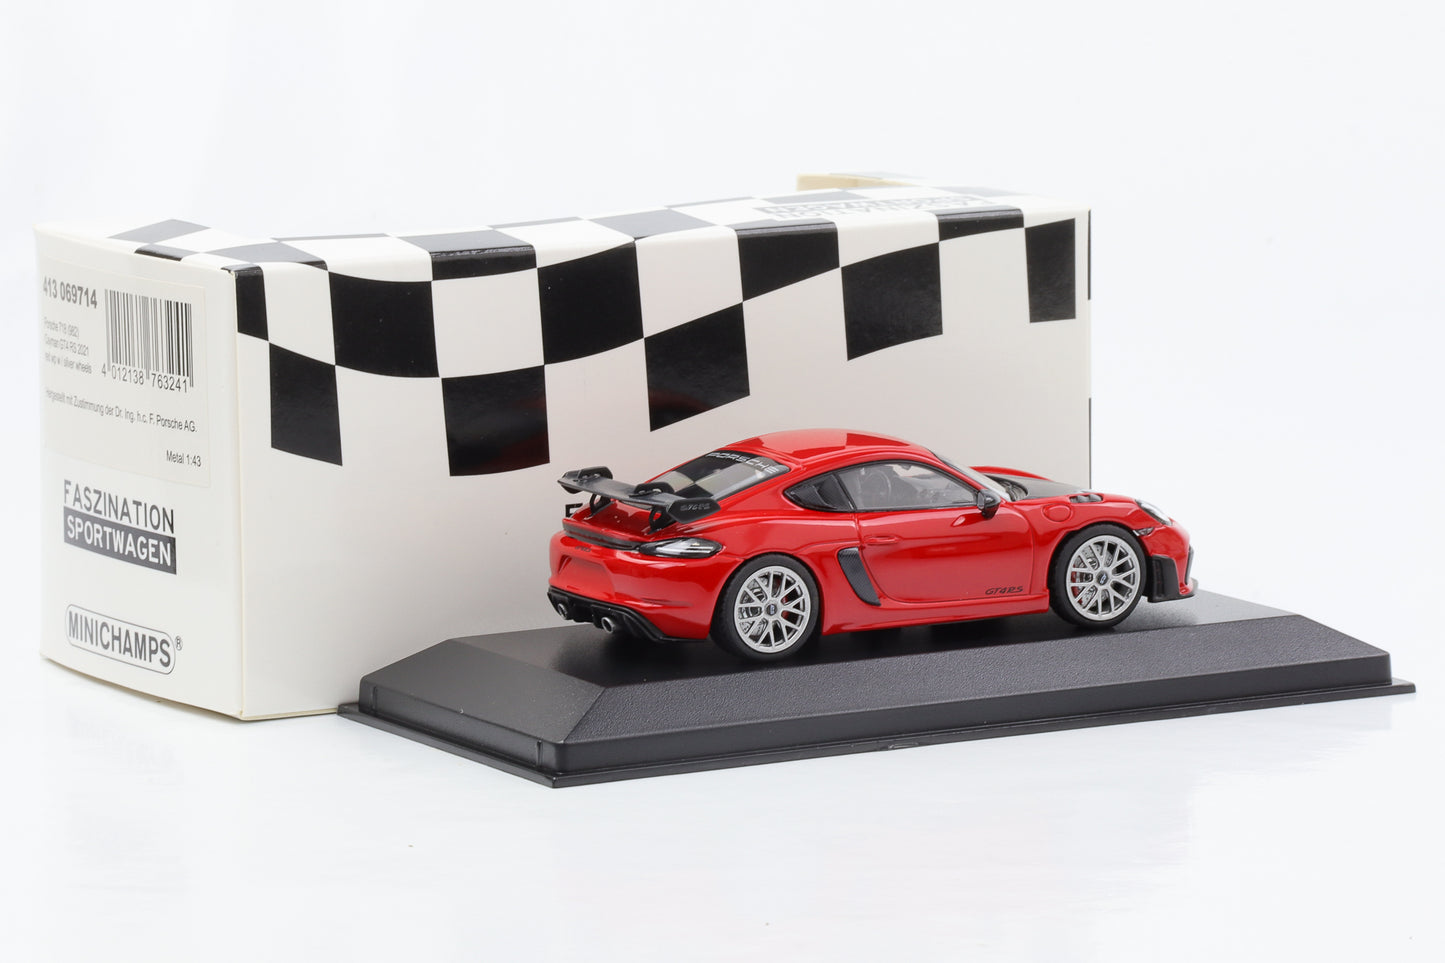 1:43 Porsche 718 982 Cayman GT4 RS 2021 red Minichamps